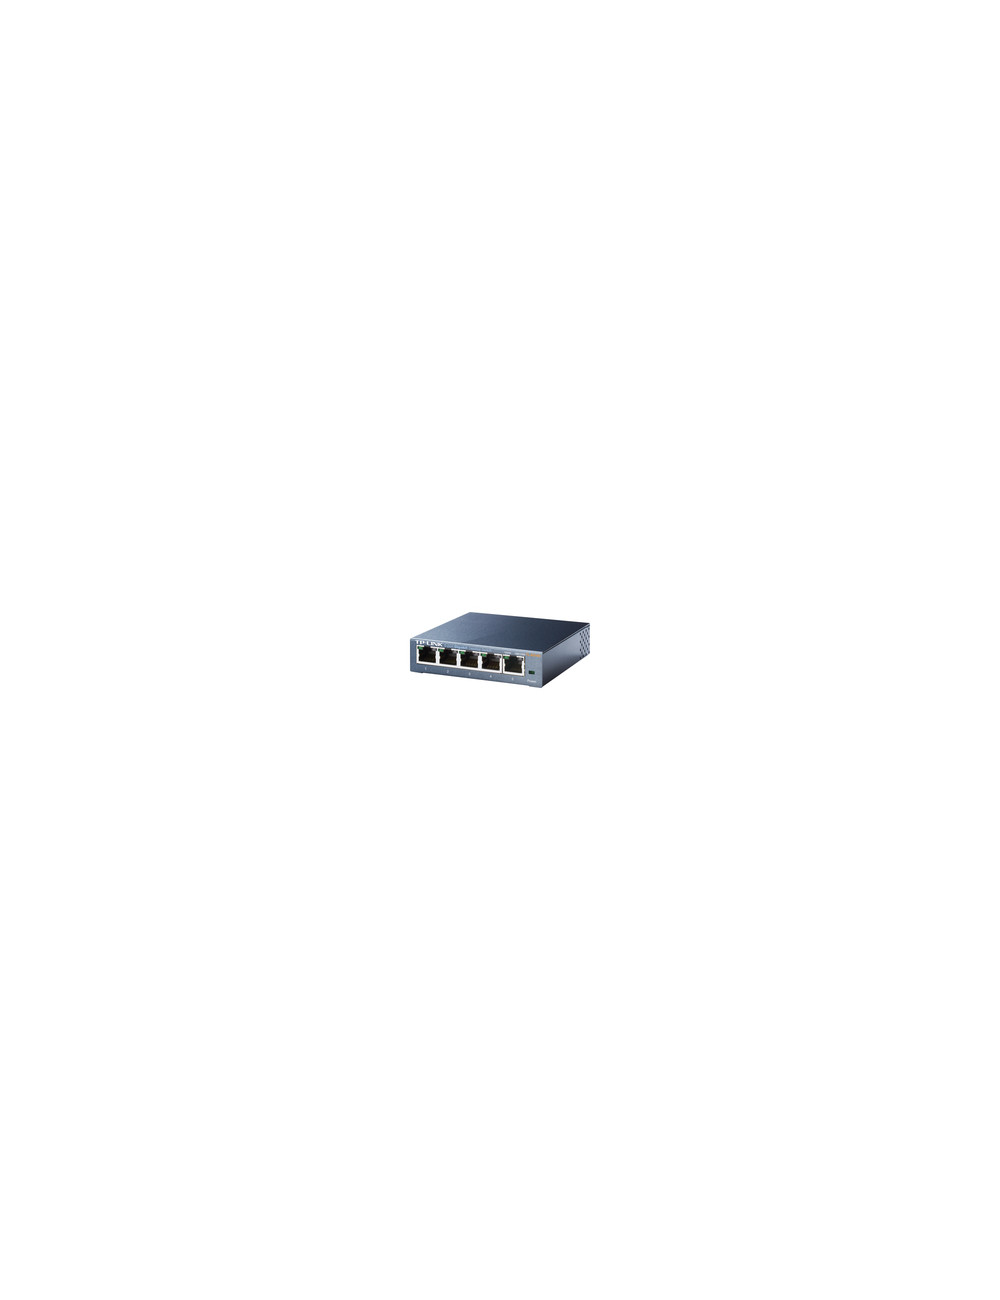 TP-LINK 5-port Metal Gigabit Switch